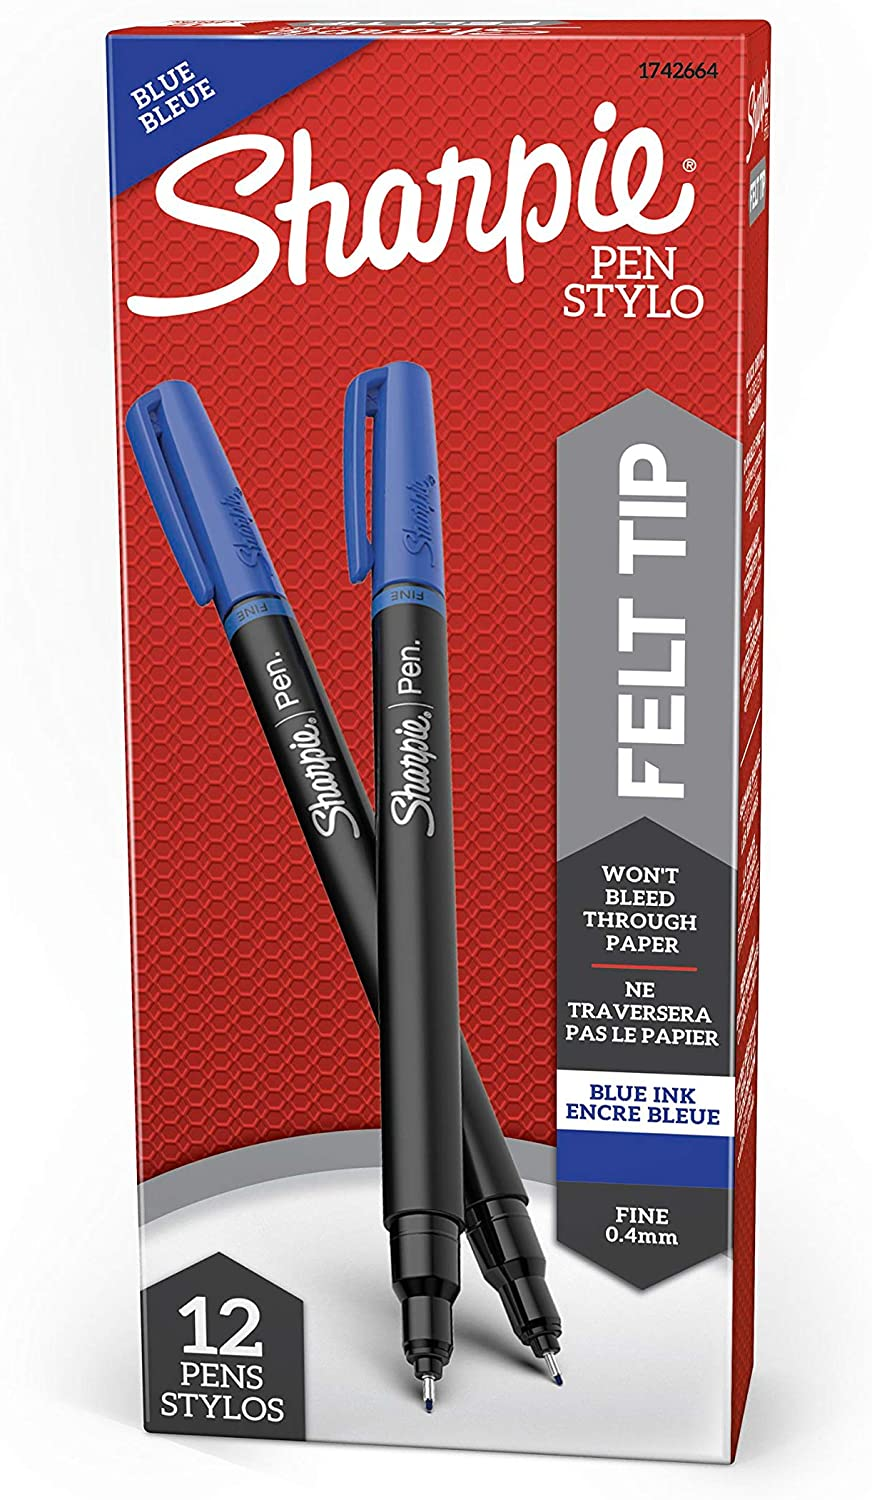 Sharpie pen